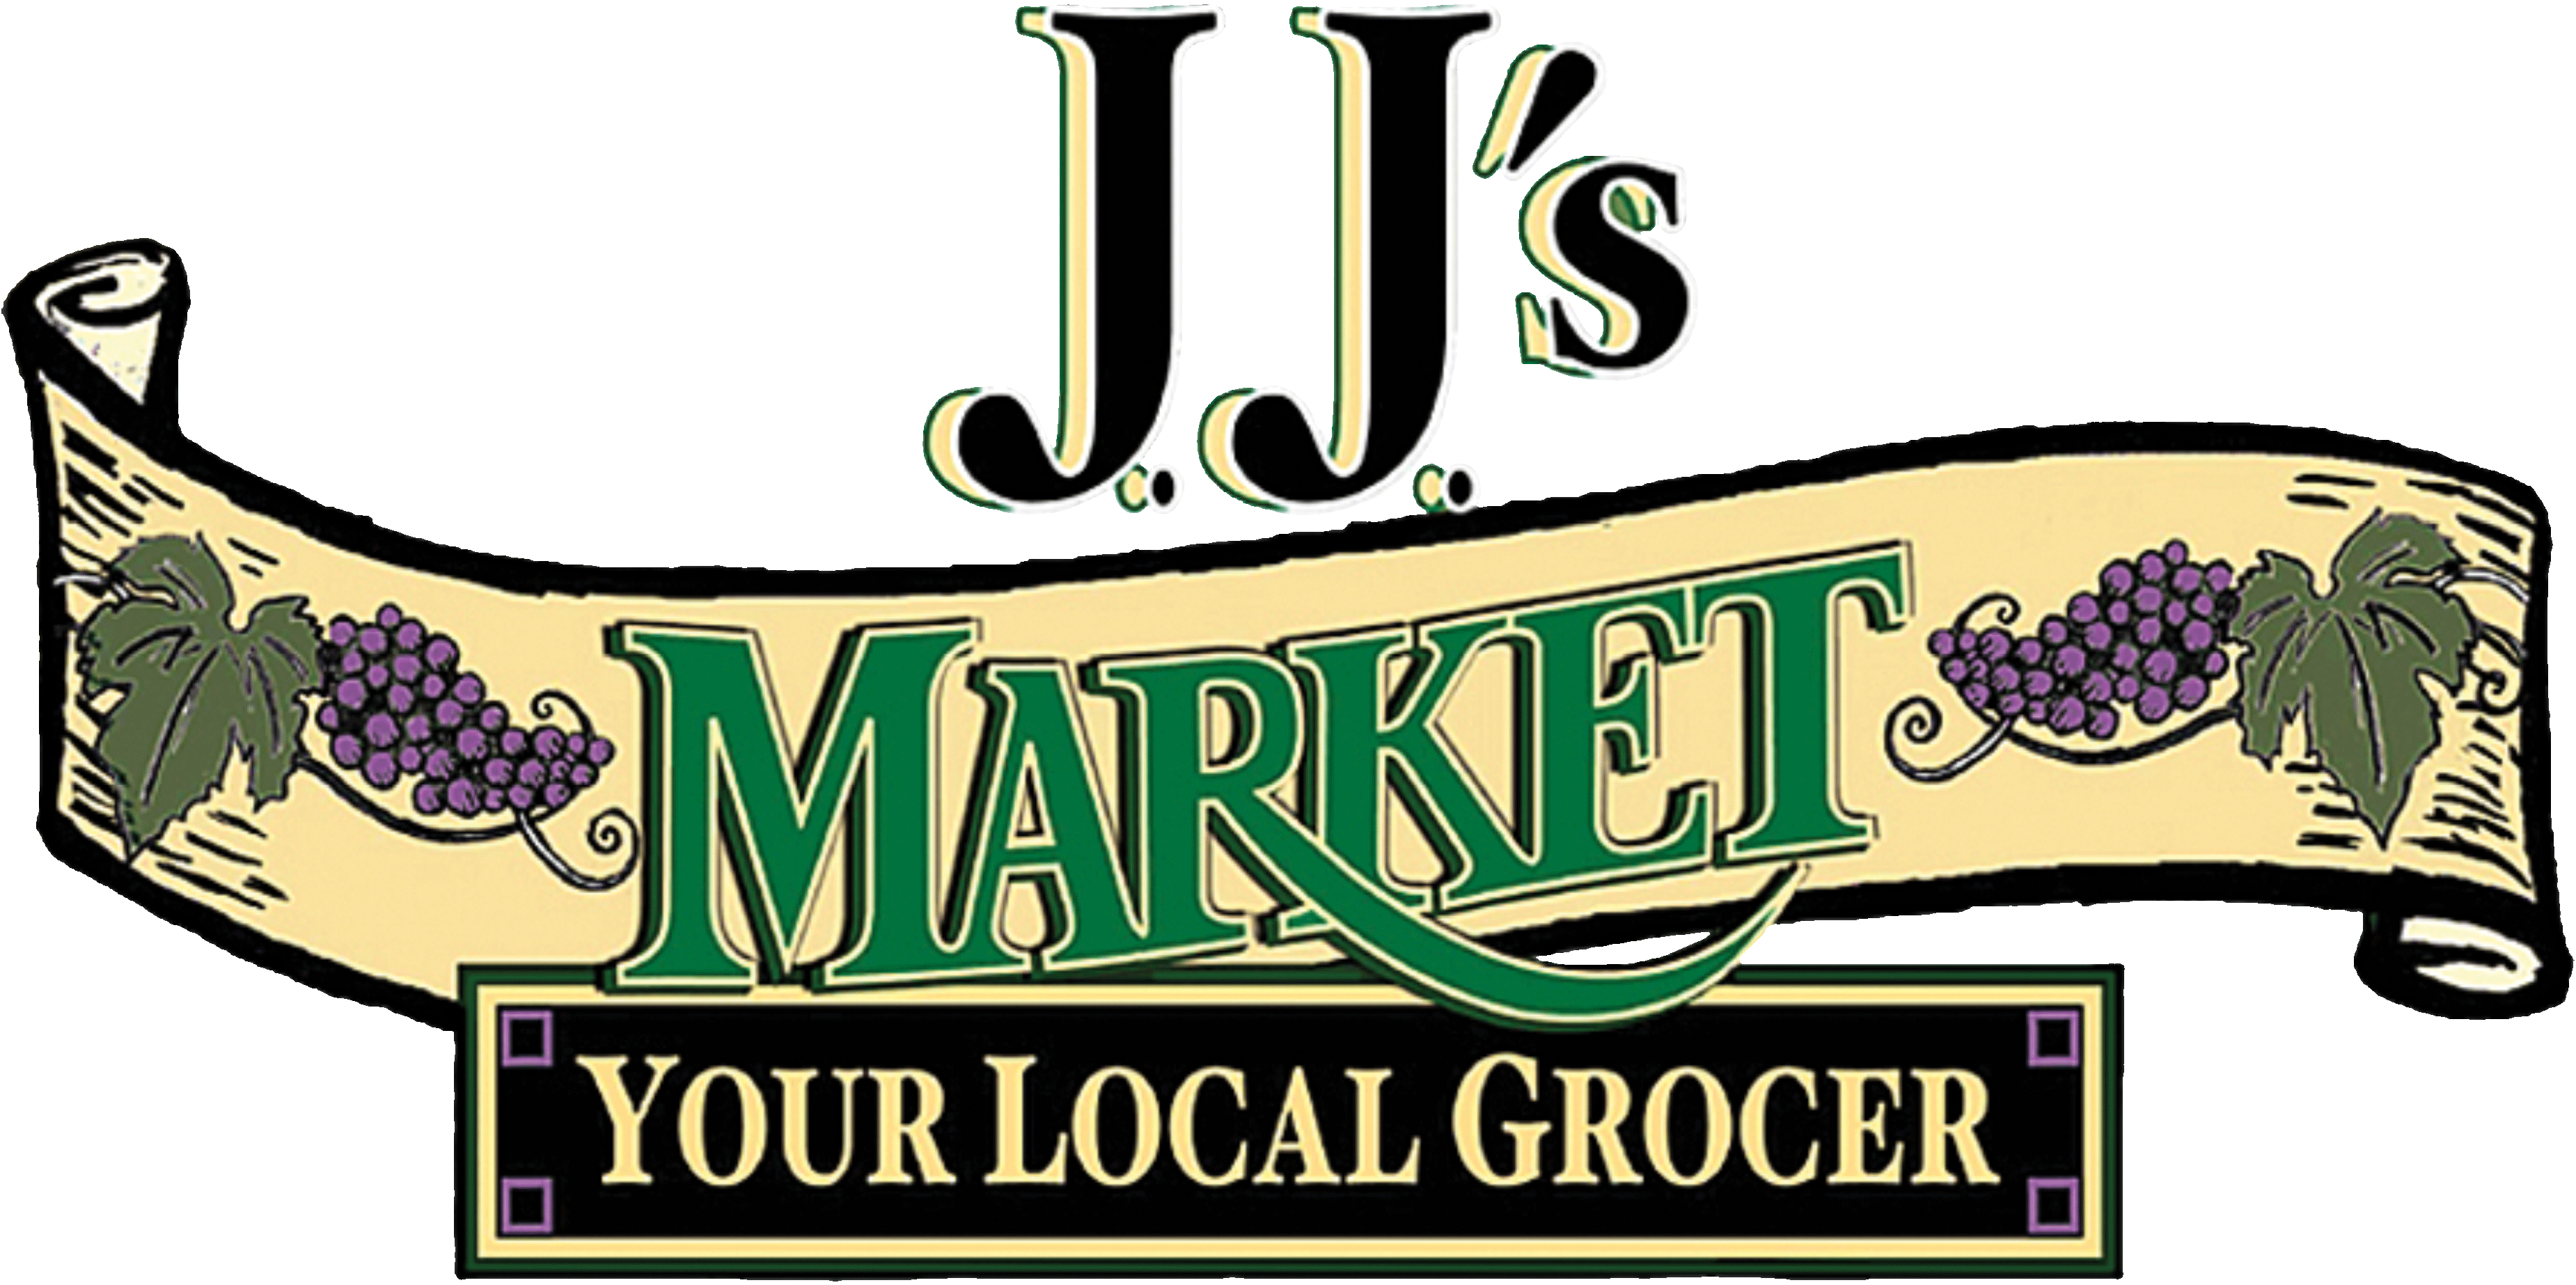 JJ's Logo